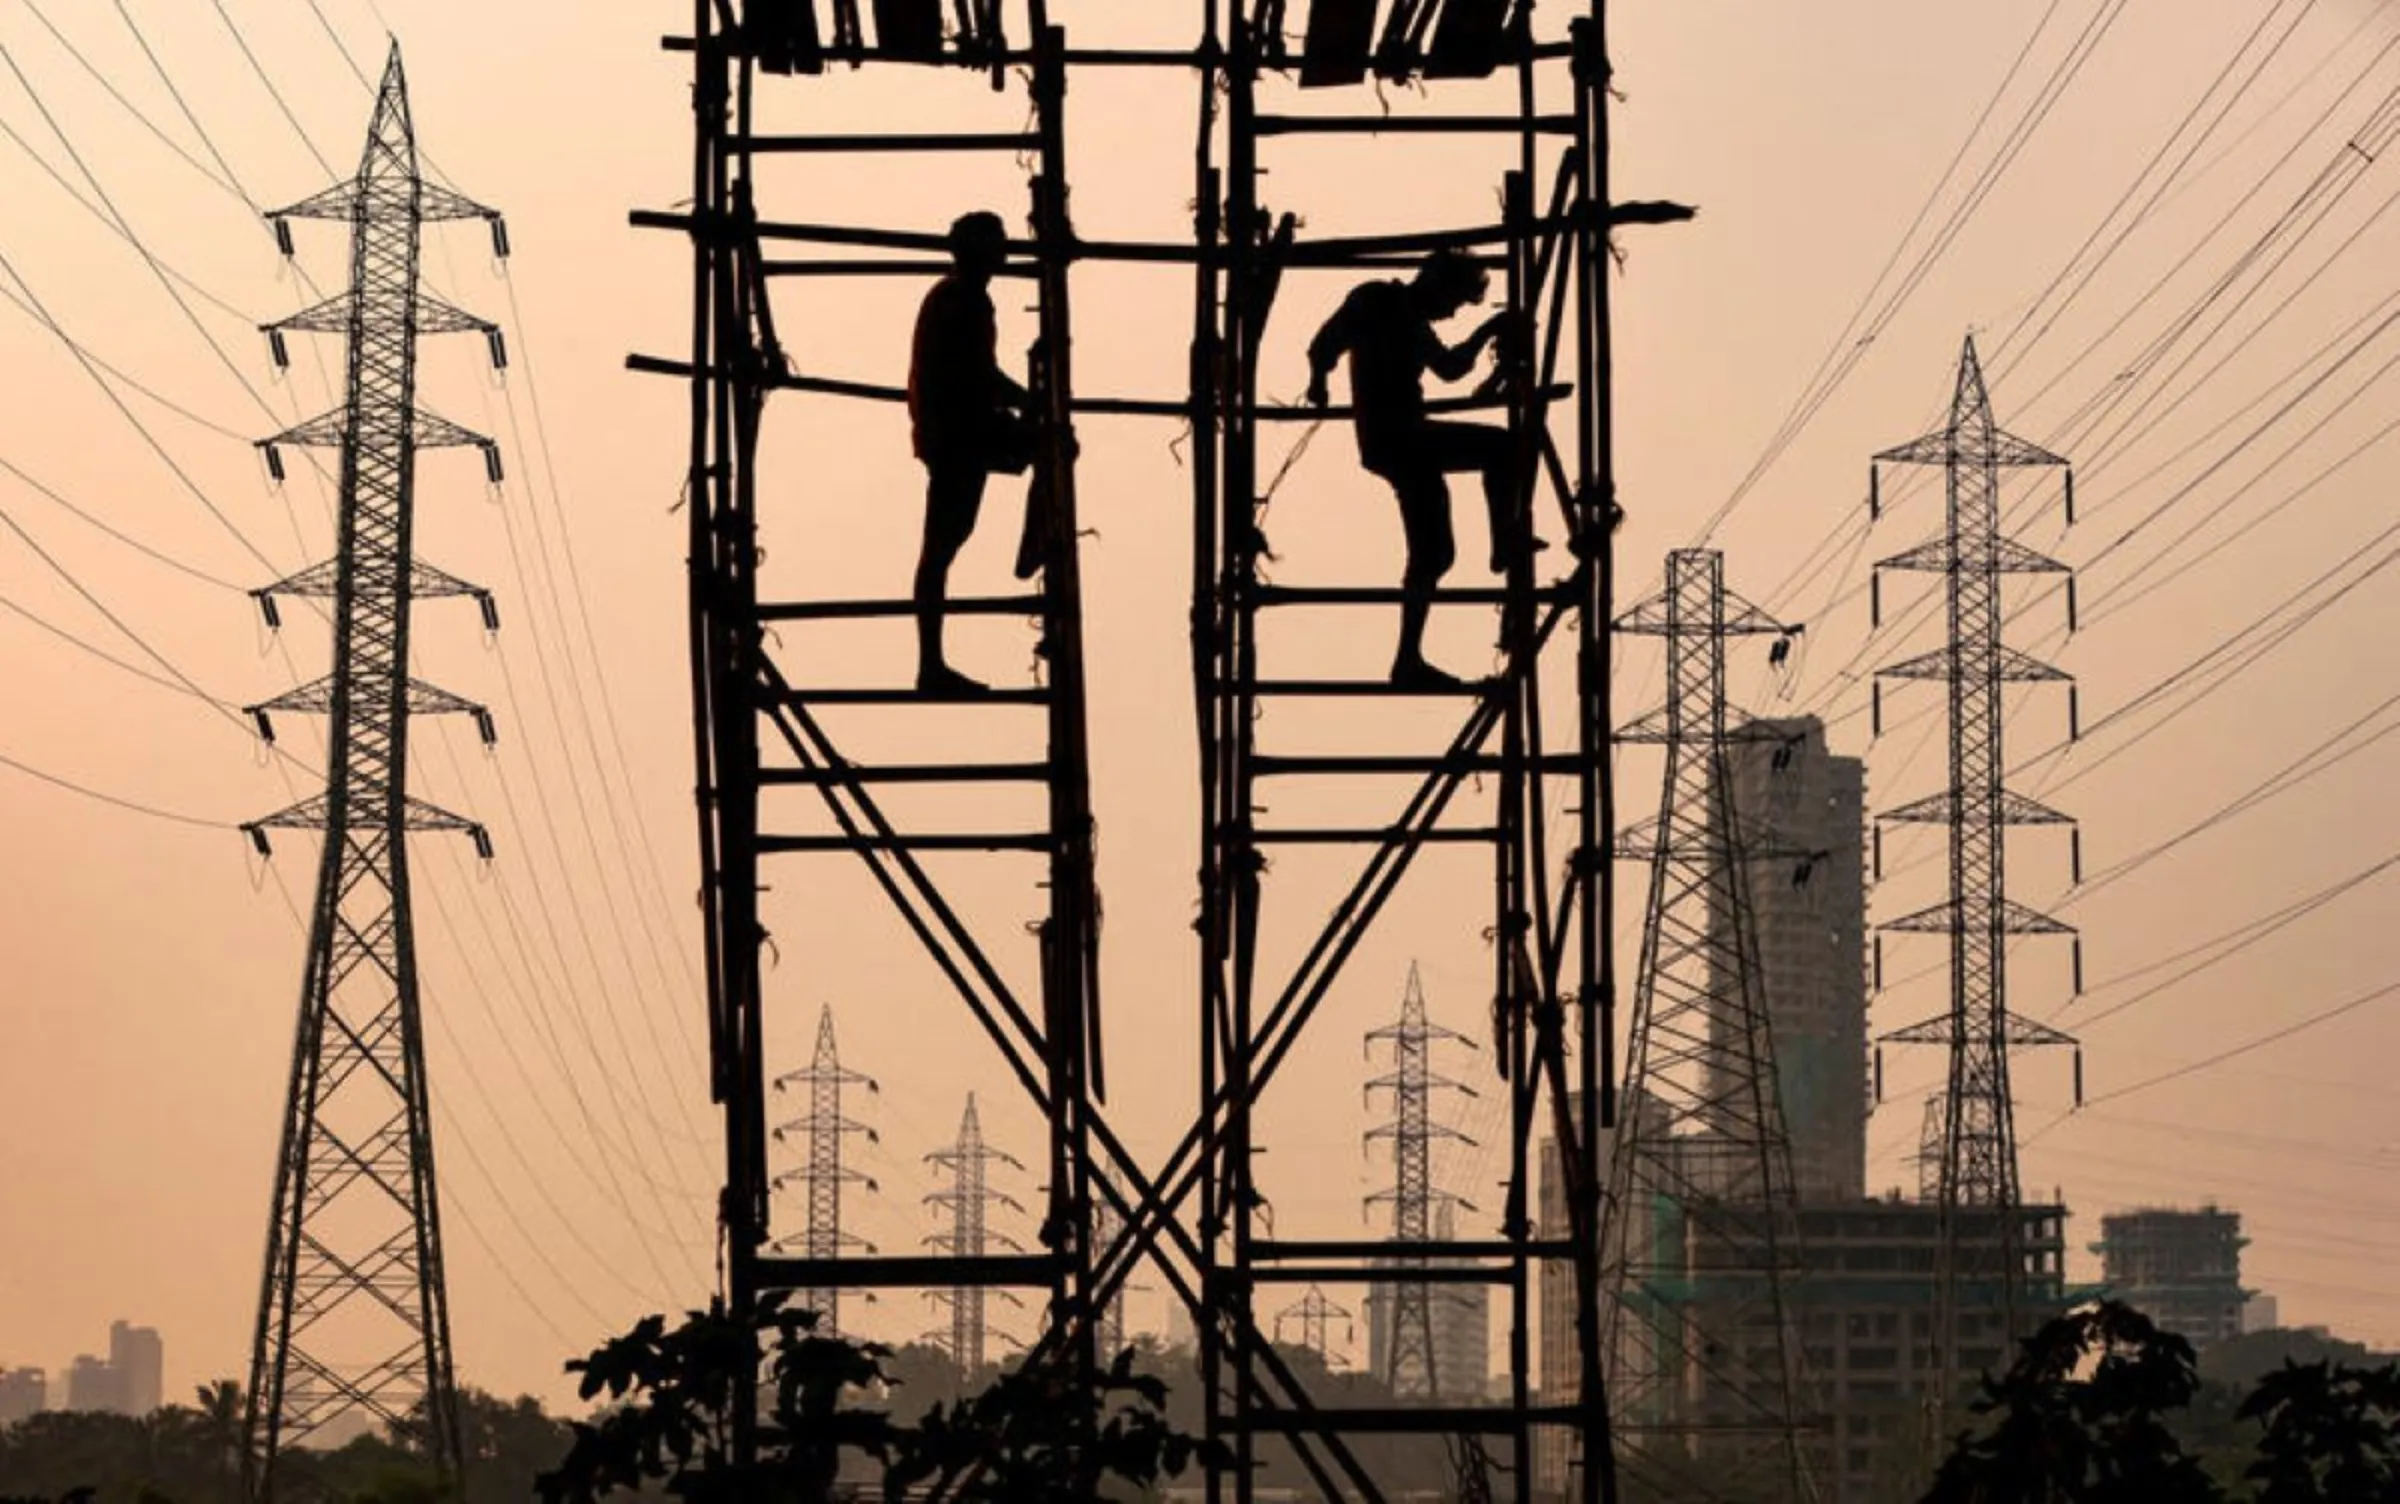 Labourers work next to electricity pylons in Mumbai, India, October 13, 2021. REUTERS/Francis Mascarenhas